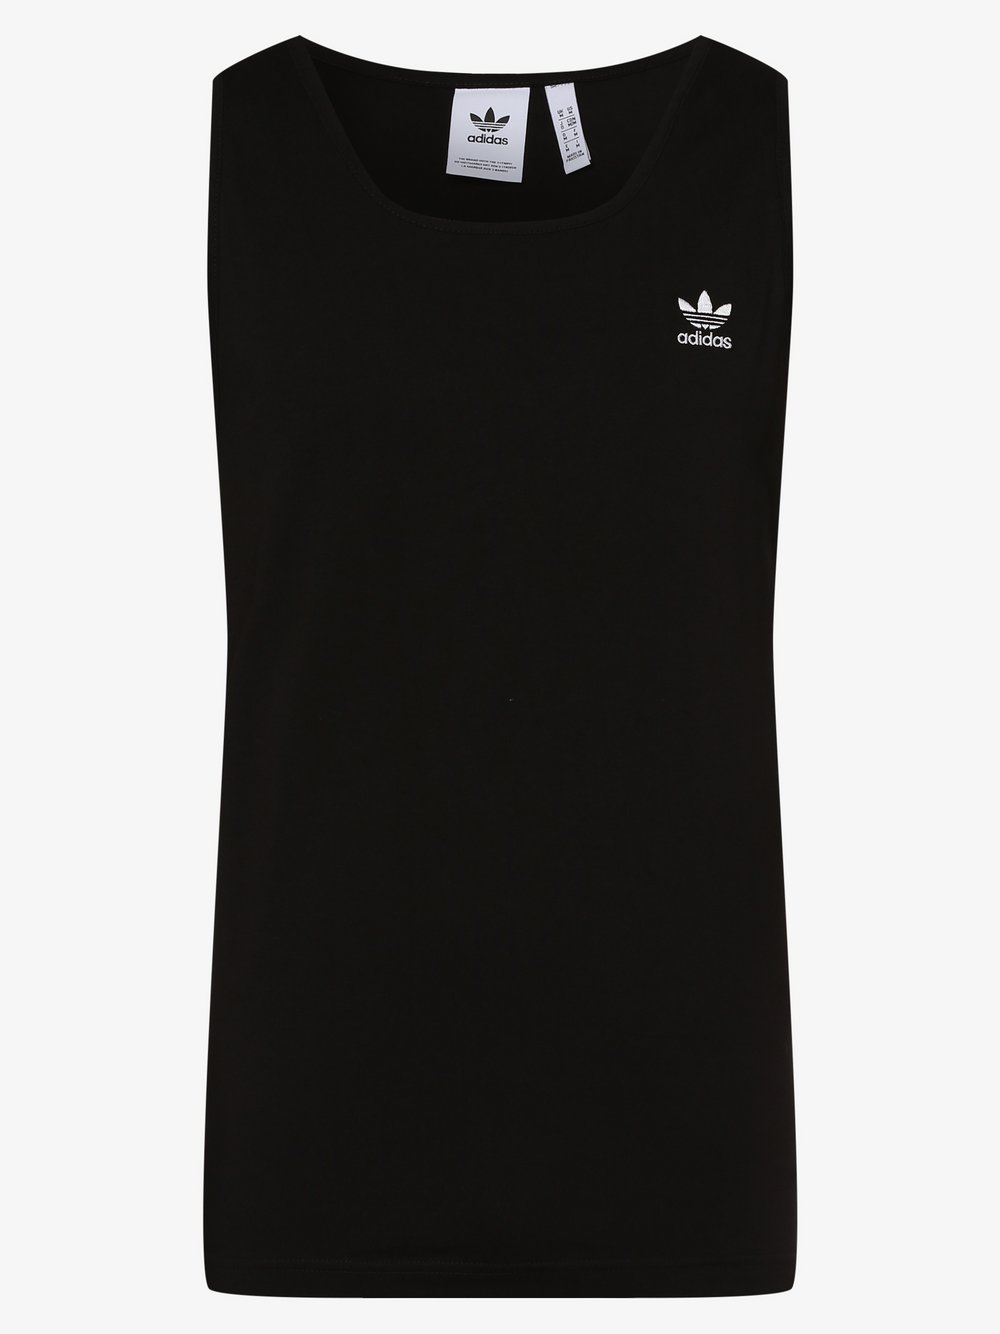 Adidas Originals - Męski tank top, czarny